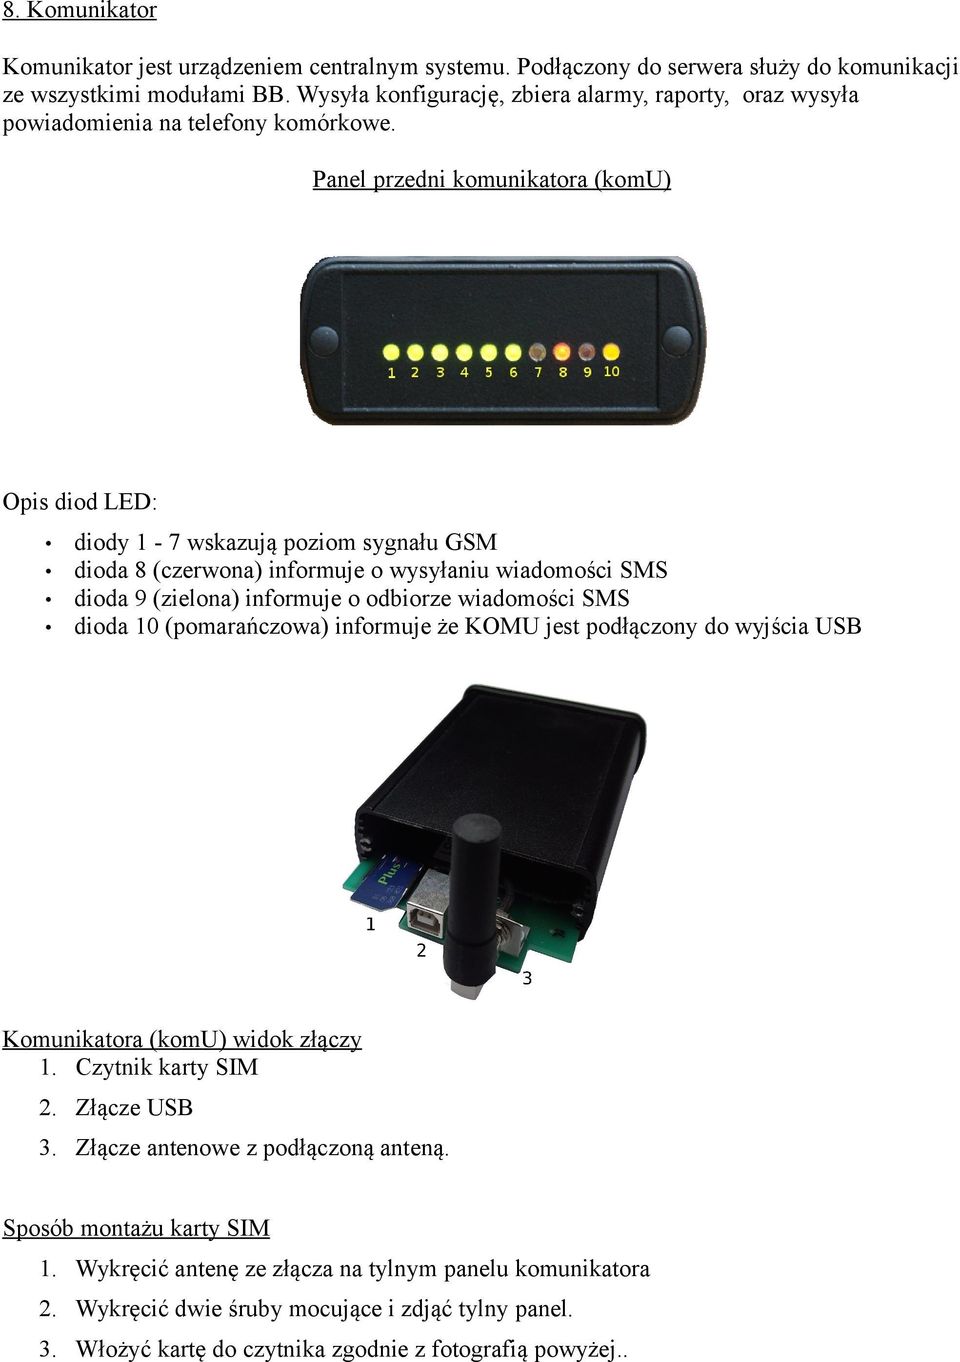 Panel przedni komunikatora (komu) Opis diod LED: diody 1-7 wskazują poziom sygnału GSM dioda 8 (czerwona) informuje o wysyłaniu wiadomości SMS dioda 9 (zielona) informuje o odbiorze wiadomości SMS